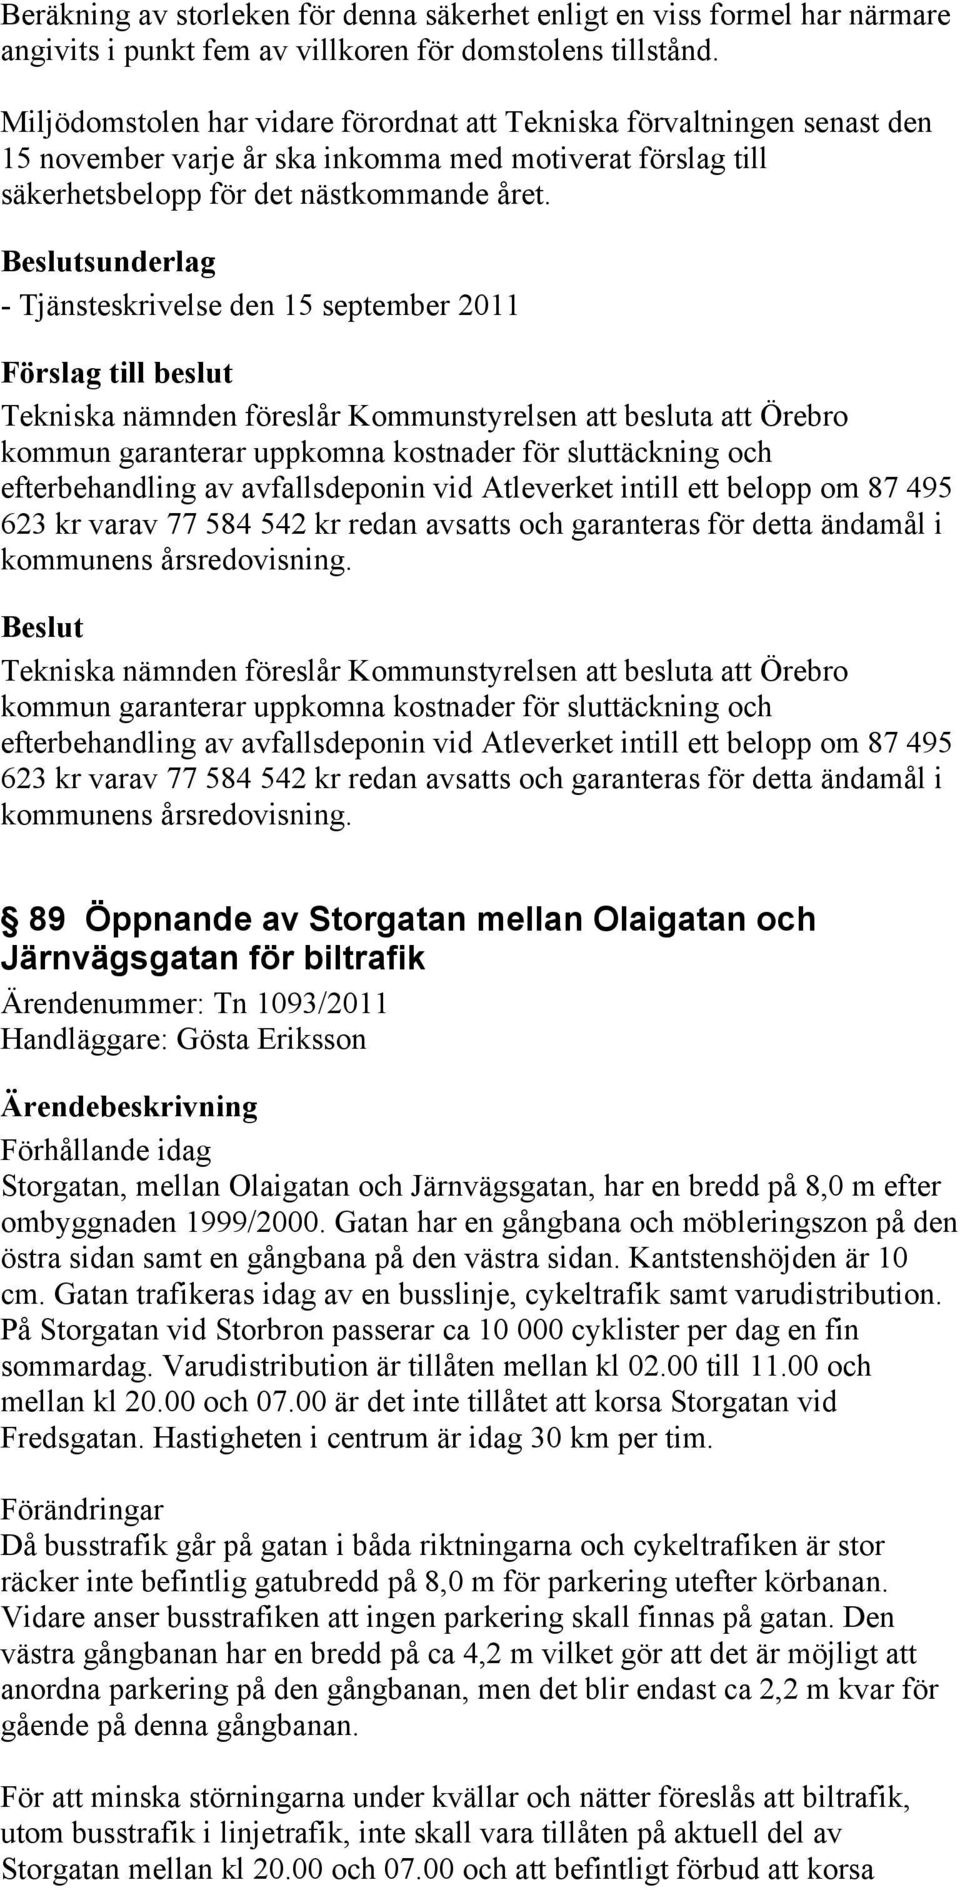 sunderlag - Tjänsteskrivelse den 15 september 2011 Tekniska nämnden föreslår Kommunstyrelsen att besluta att Örebro kommun garanterar uppkomna kostnader för sluttäckning och efterbehandling av